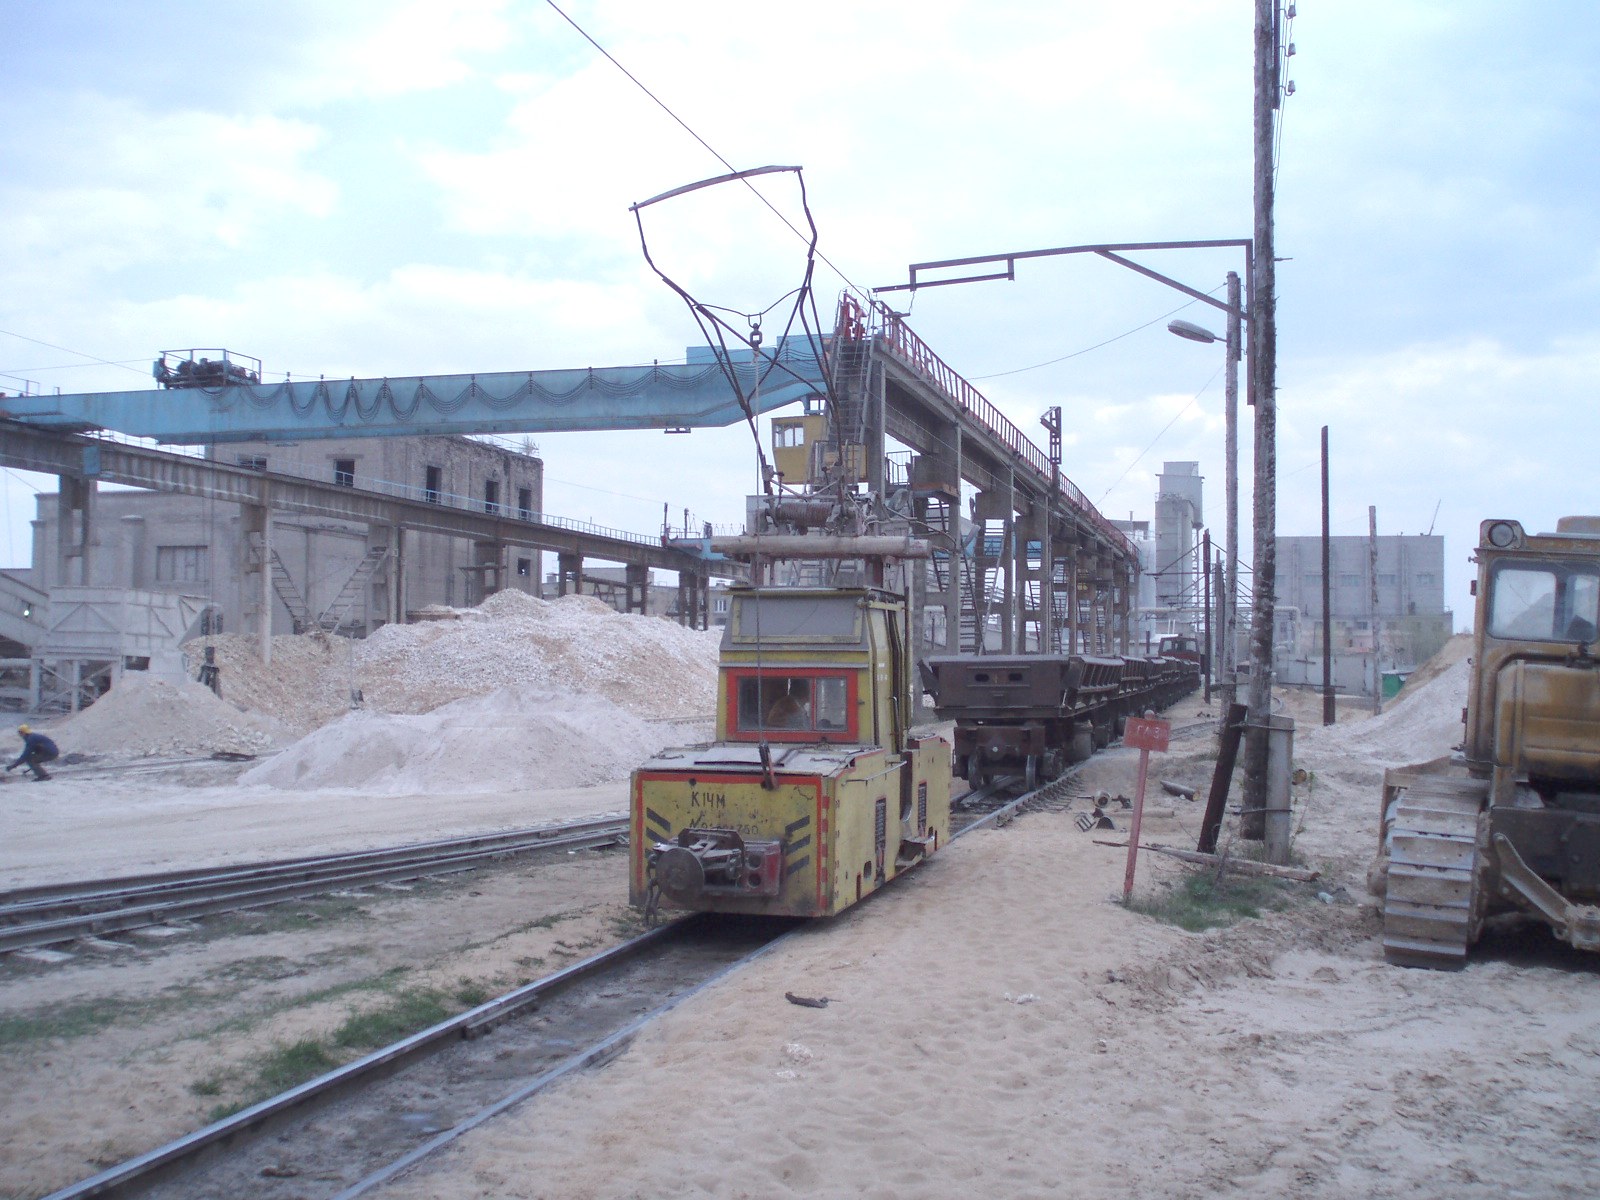 Узкоколейная железная дорога  Тверского комбината строительных материалов №2 — фотографии, сделанные в 2006 году (часть 2)